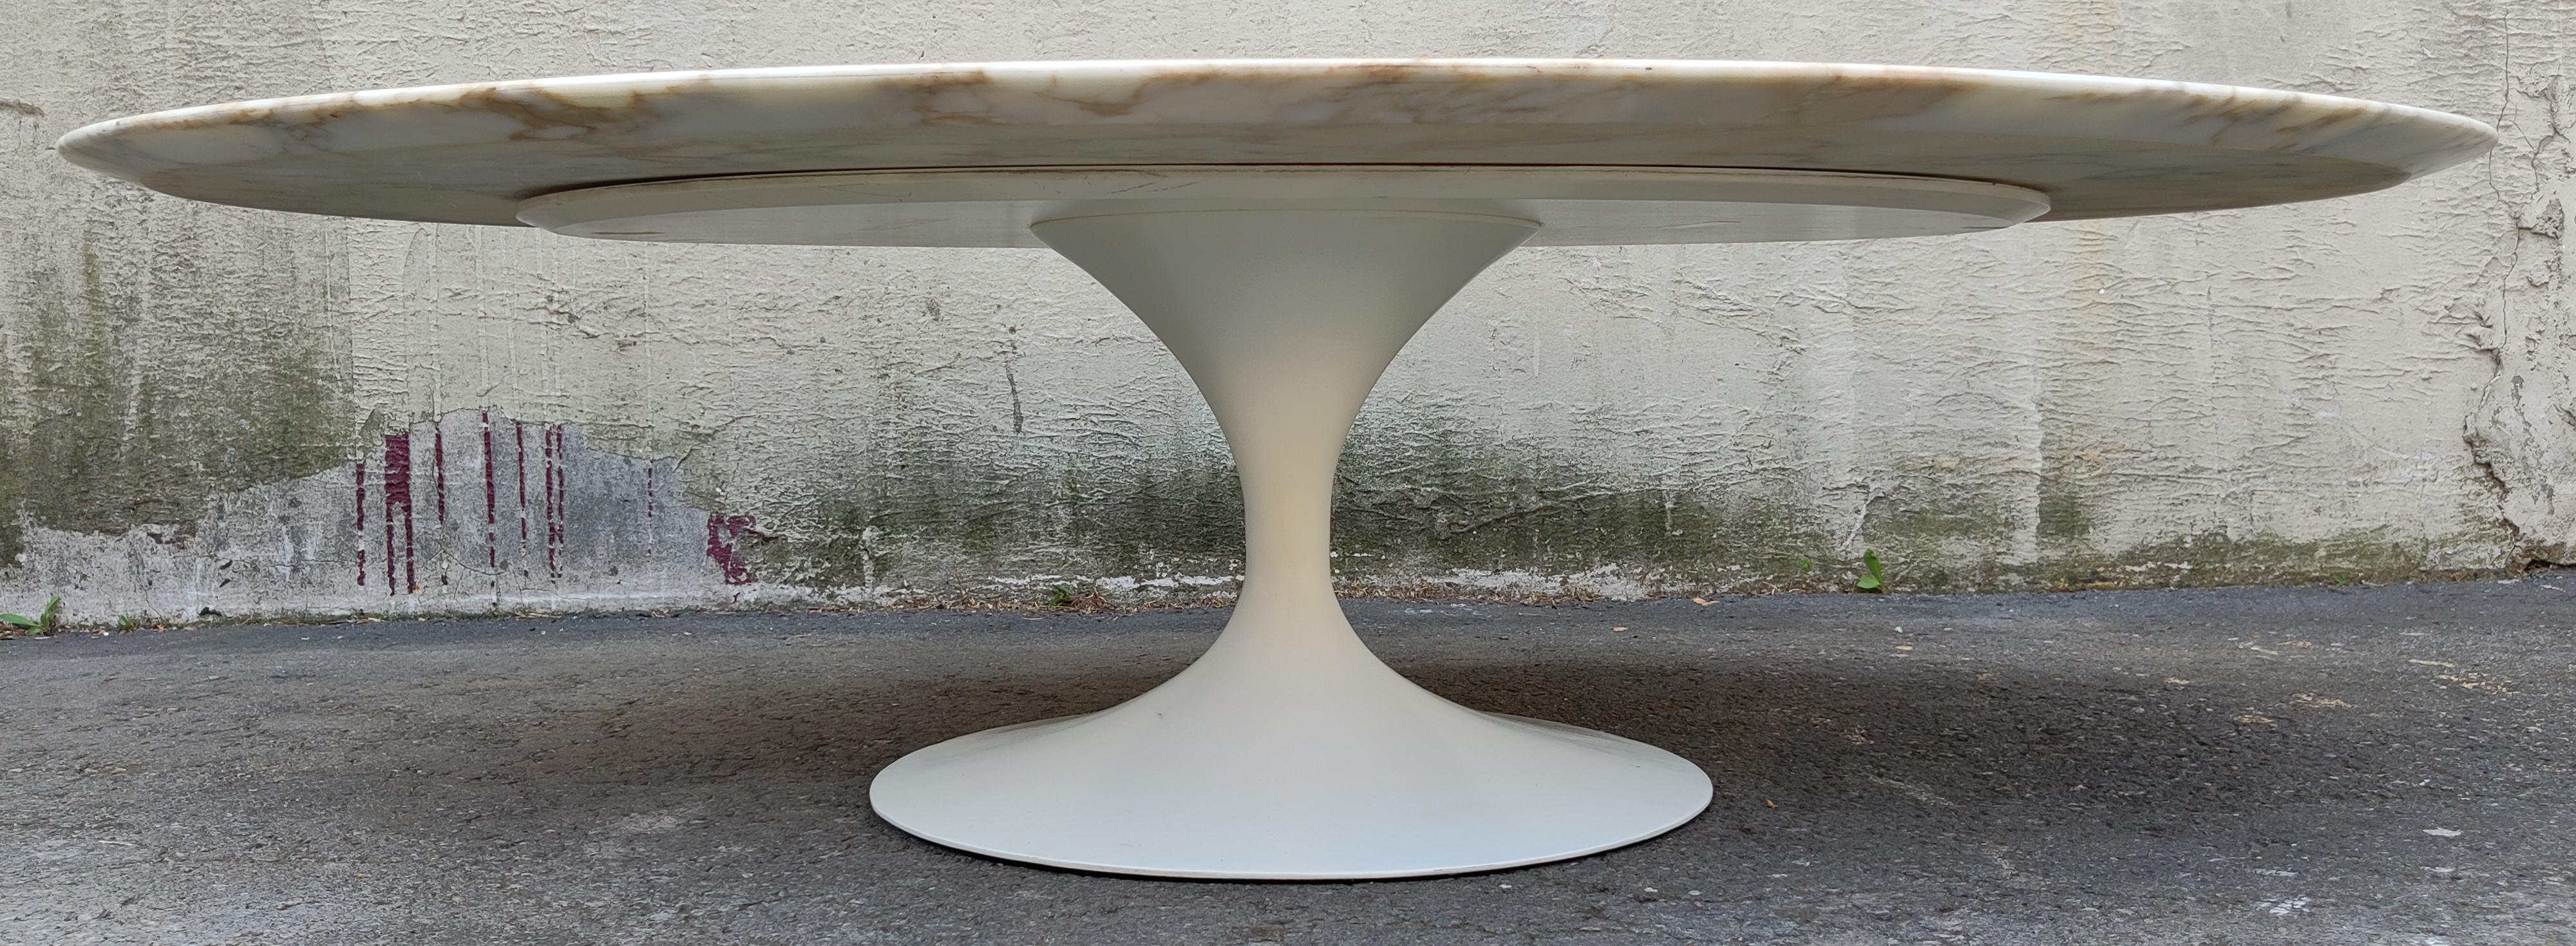 Conçue à l'origine par Eero Saarinen, cette table a été fabriquée dans les années 1960 par Knoll International pour être revendue au cœur de la ville de New York. Whiting étant un modèle précoce, cette spécification est rare pour son époque, une